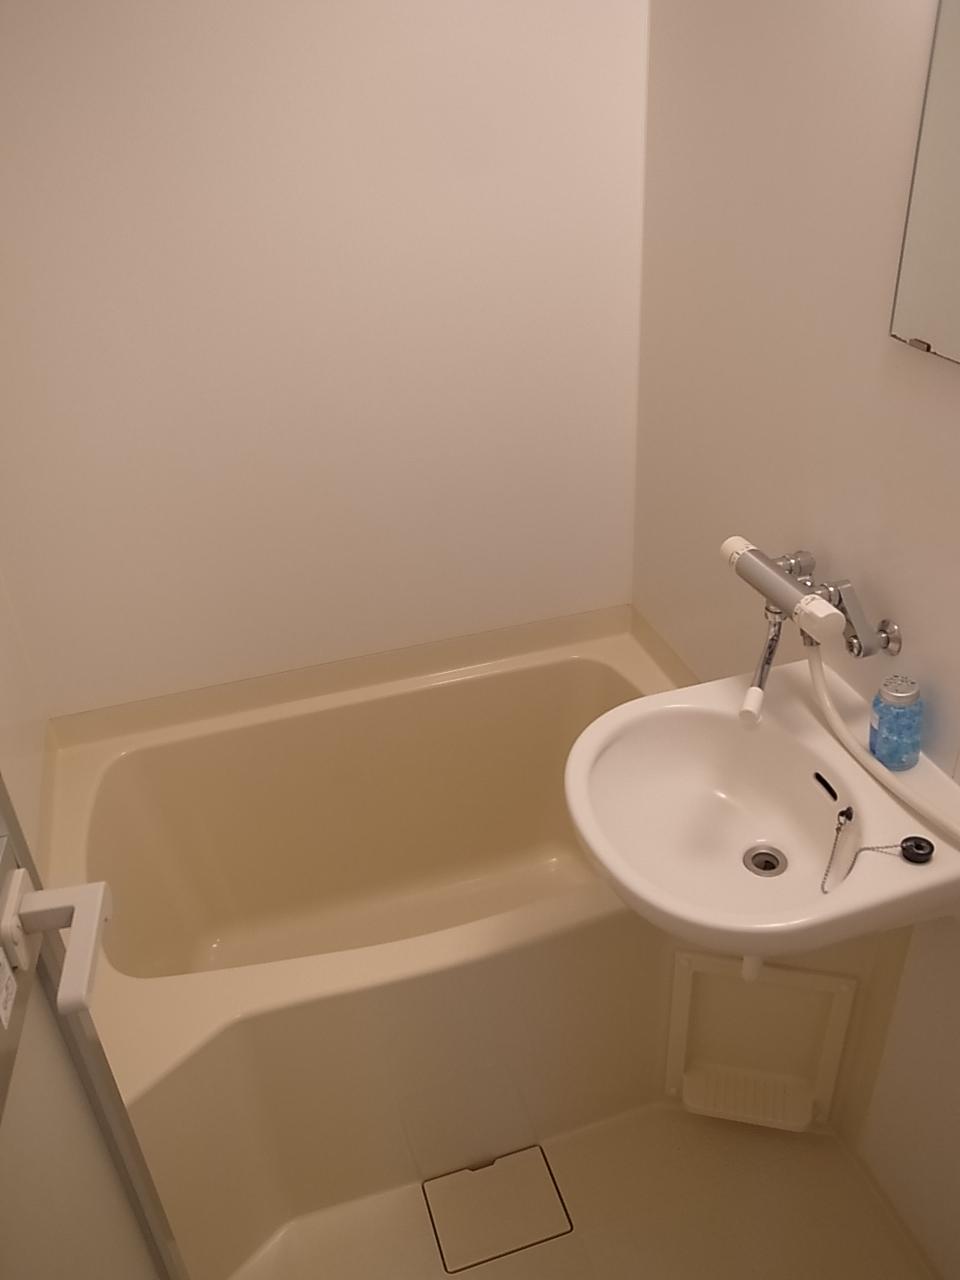 Bathroom. Bathroom & basin